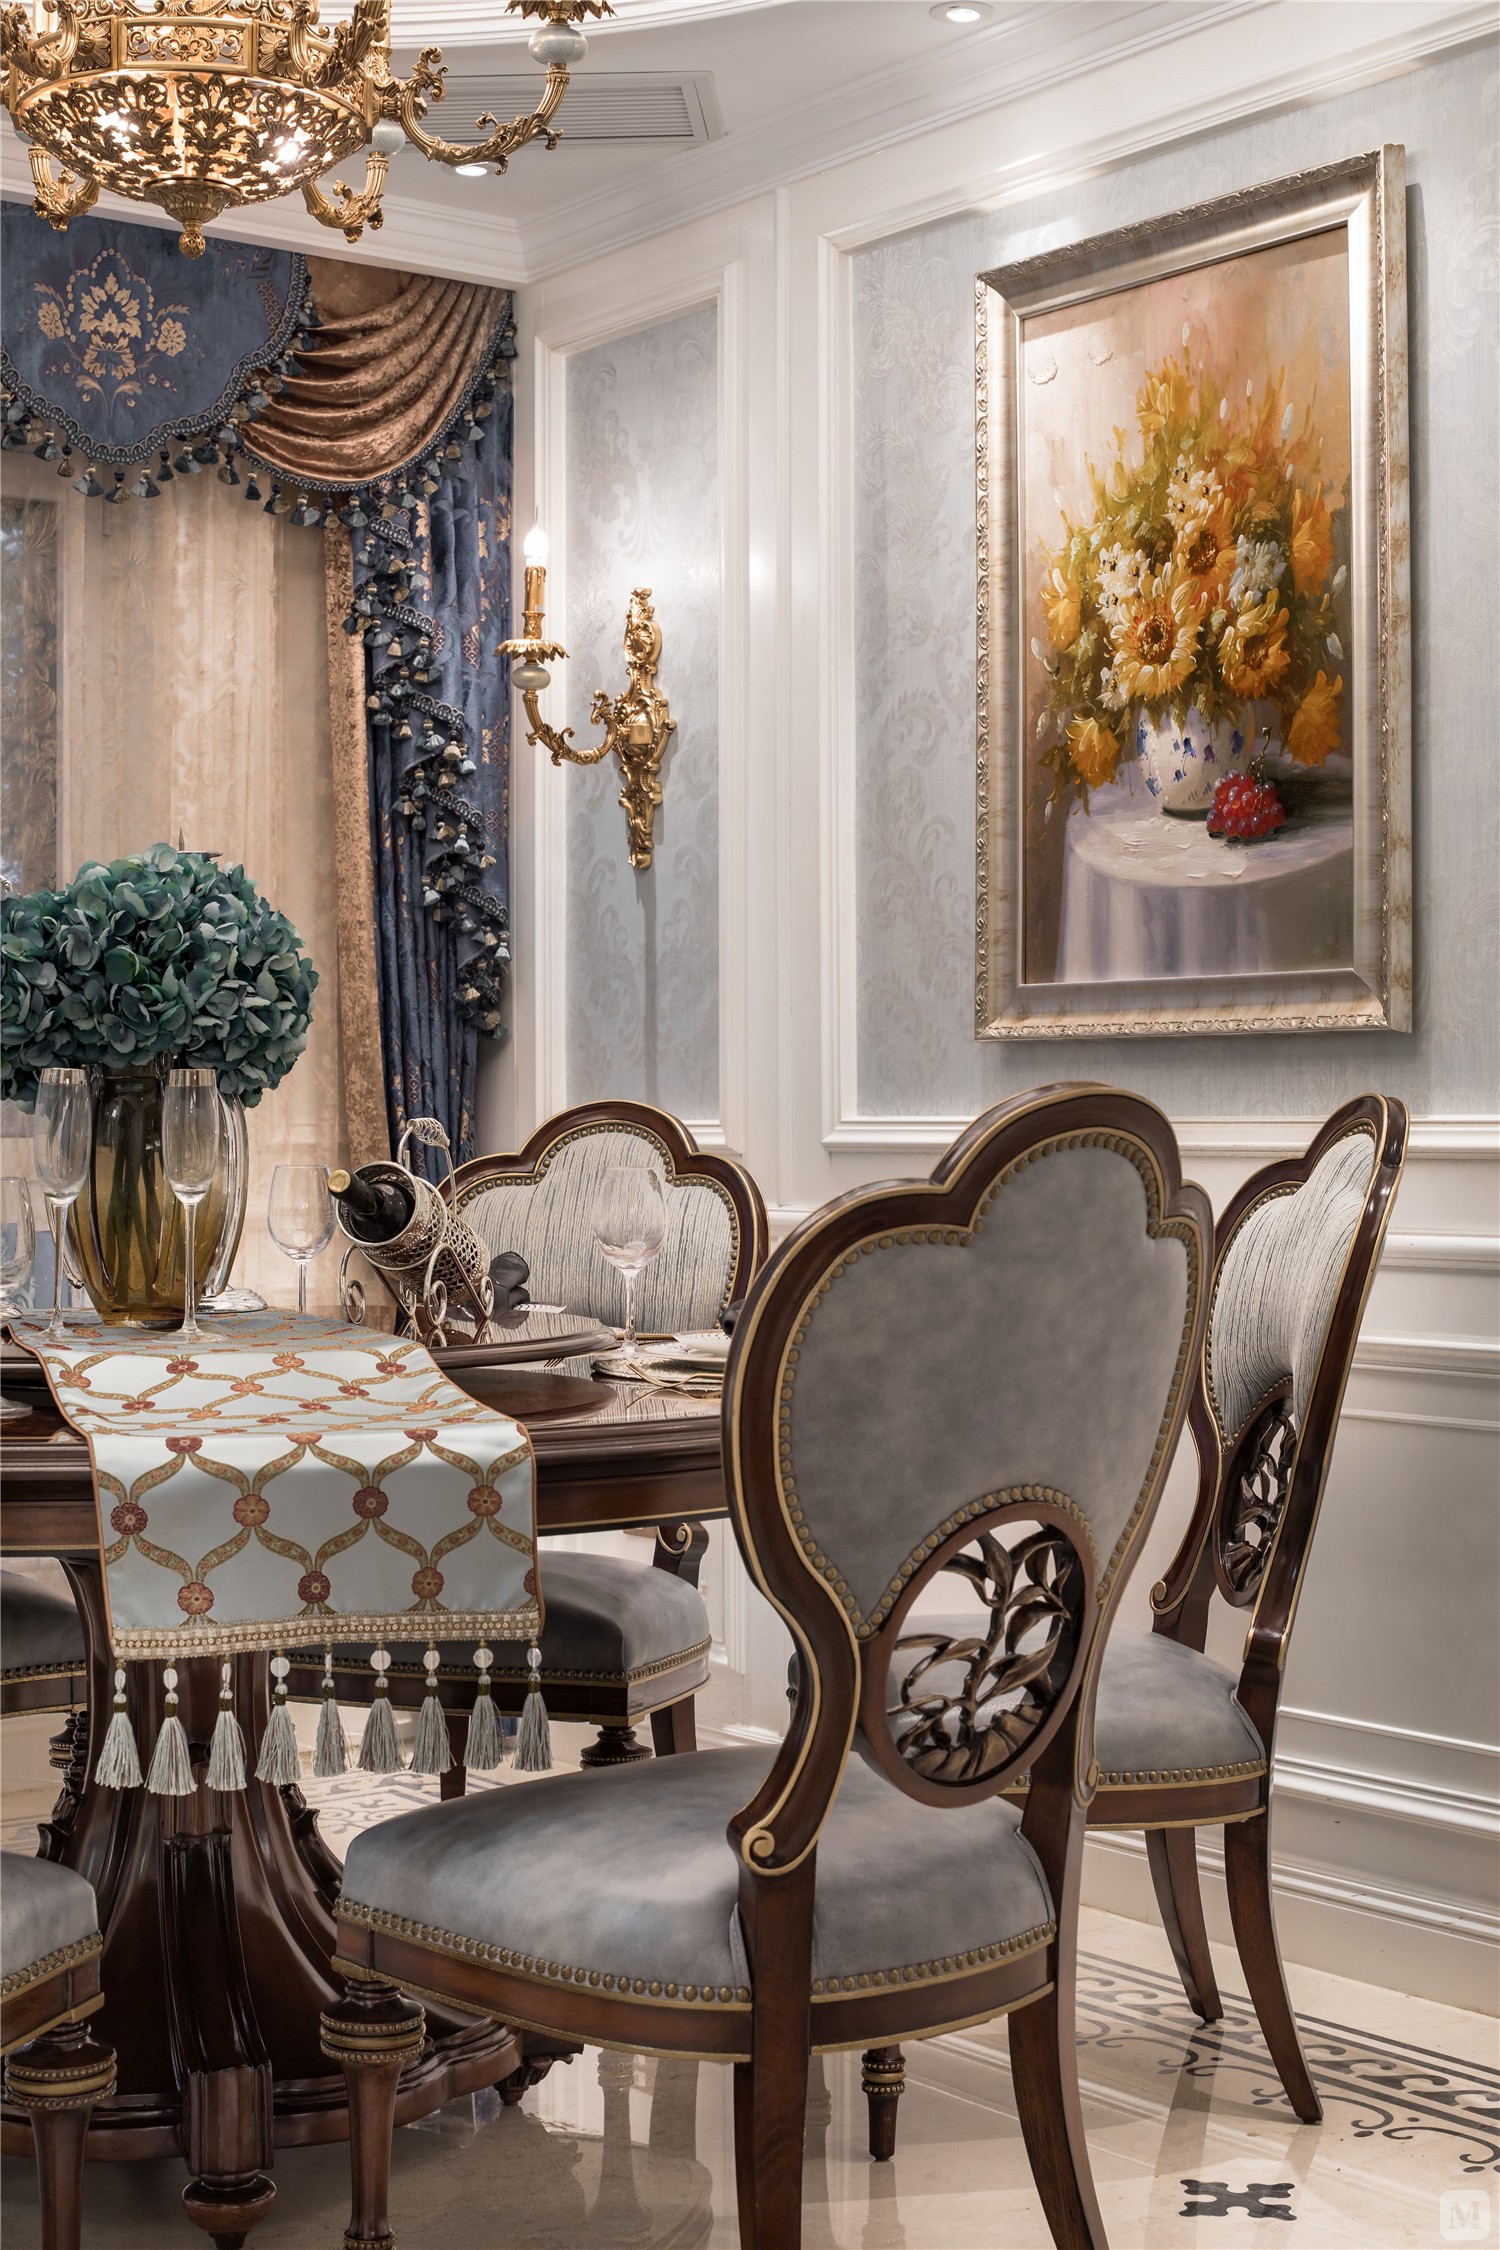 餐厅在纯白的主基调上，用灰色威尼斯漆的岁月肌理与香槟金进行调和、碰撞，清丽的设色搭配着典雅的陈设艺术品、品质承袭的舒适家具，弥漫出一室轻盈雅致的古典风韵。